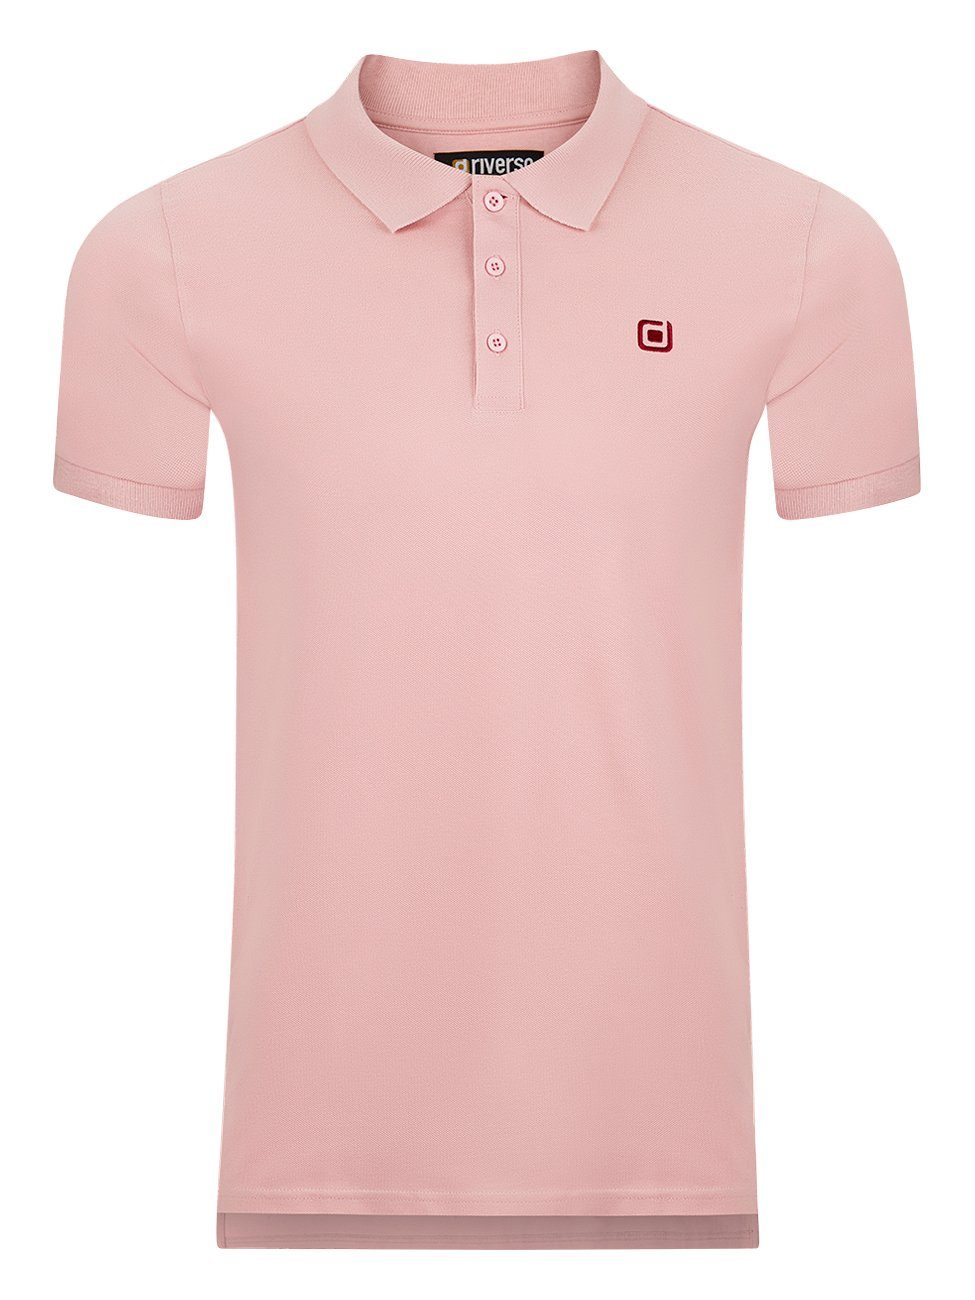 Rose Poloshirt riverso Herren Baumwolle Regular (1-tlg) 100% Hemd RIVJohn aus Basic Polohemd Middle (13300) Fit